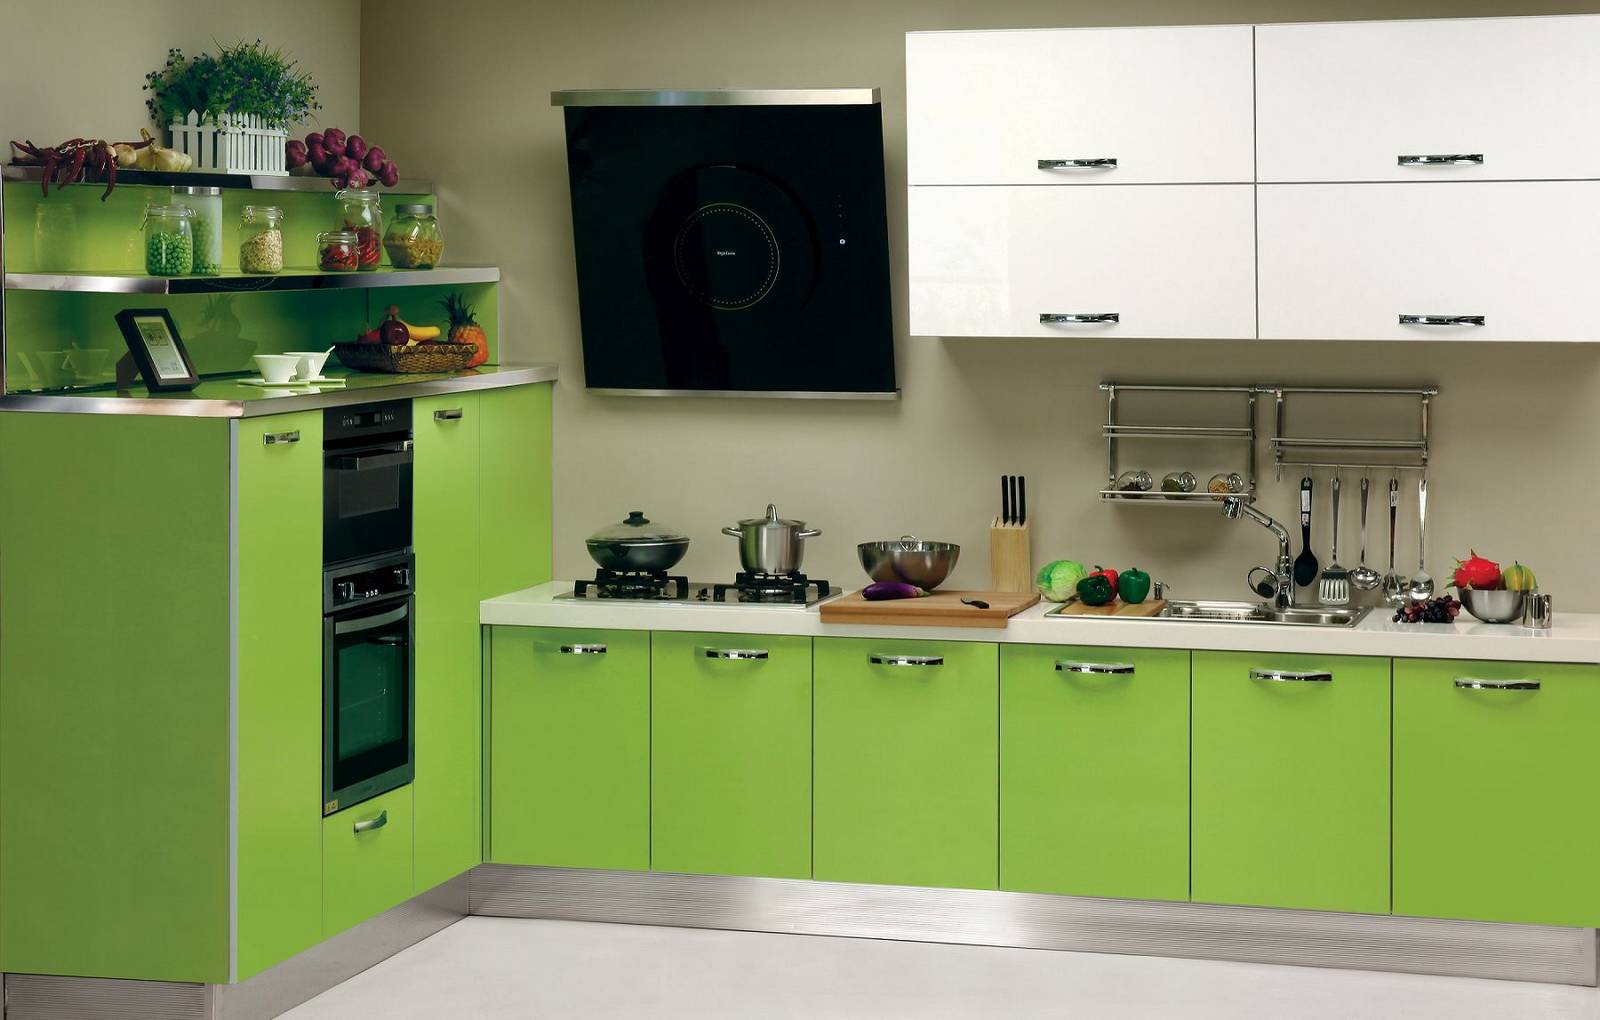 Спокойная атмосфера - одно из преимуществ кухни в зеленом цвете